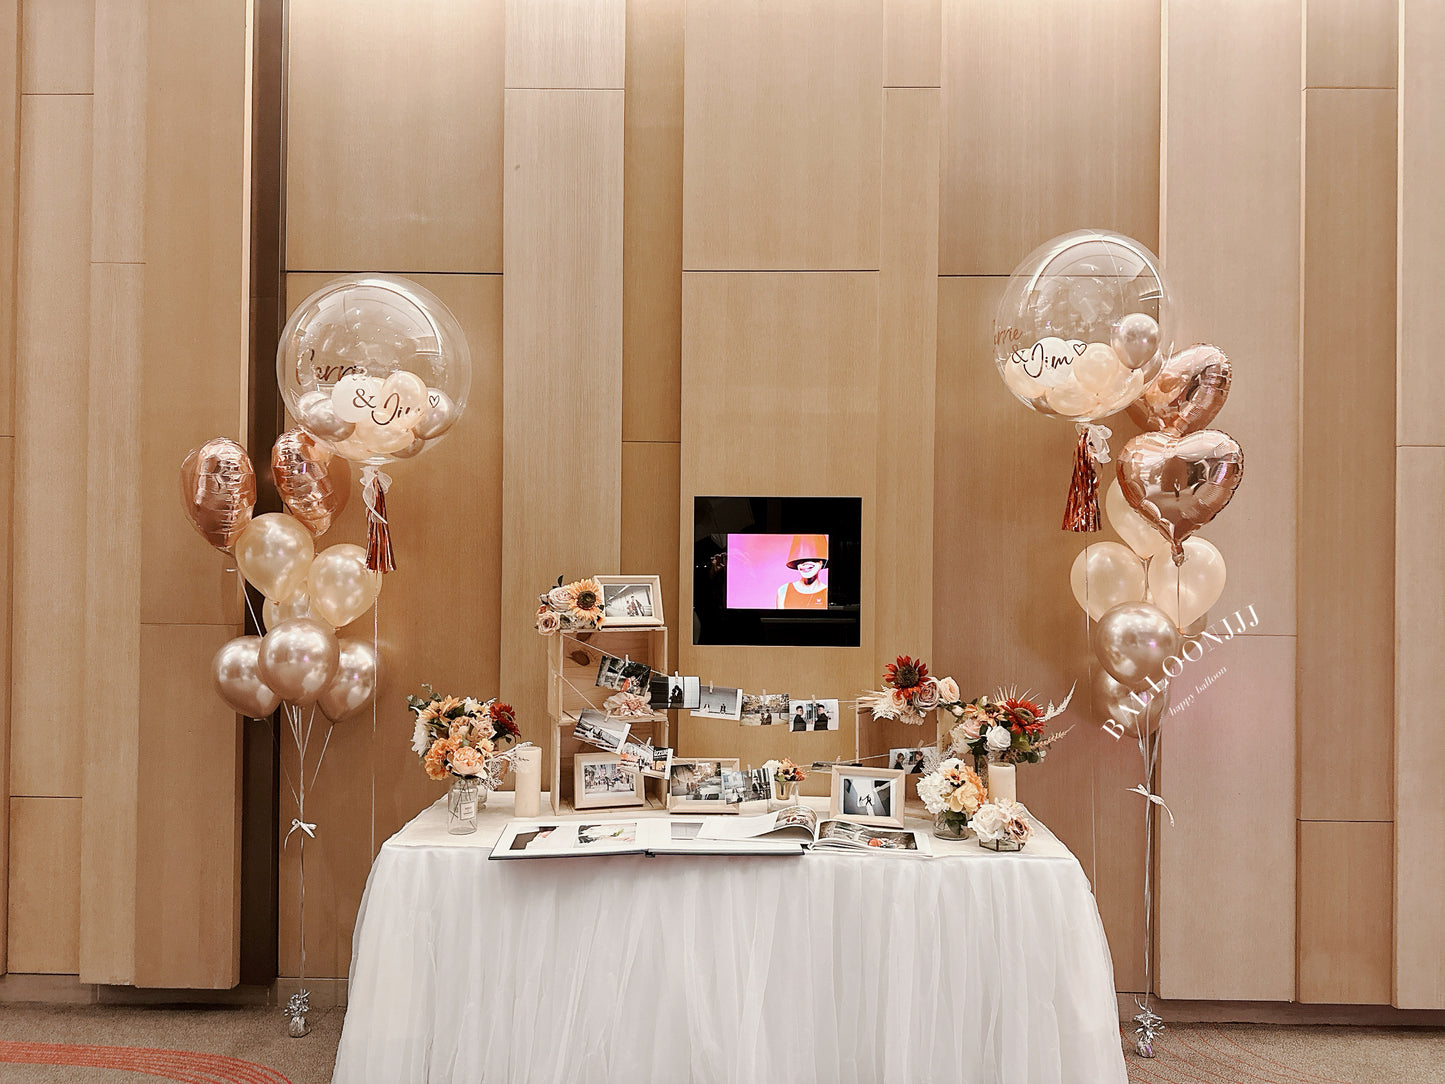 婚禮氣球套裝(婚禮首選）Wedding Balloon Bouquet Set